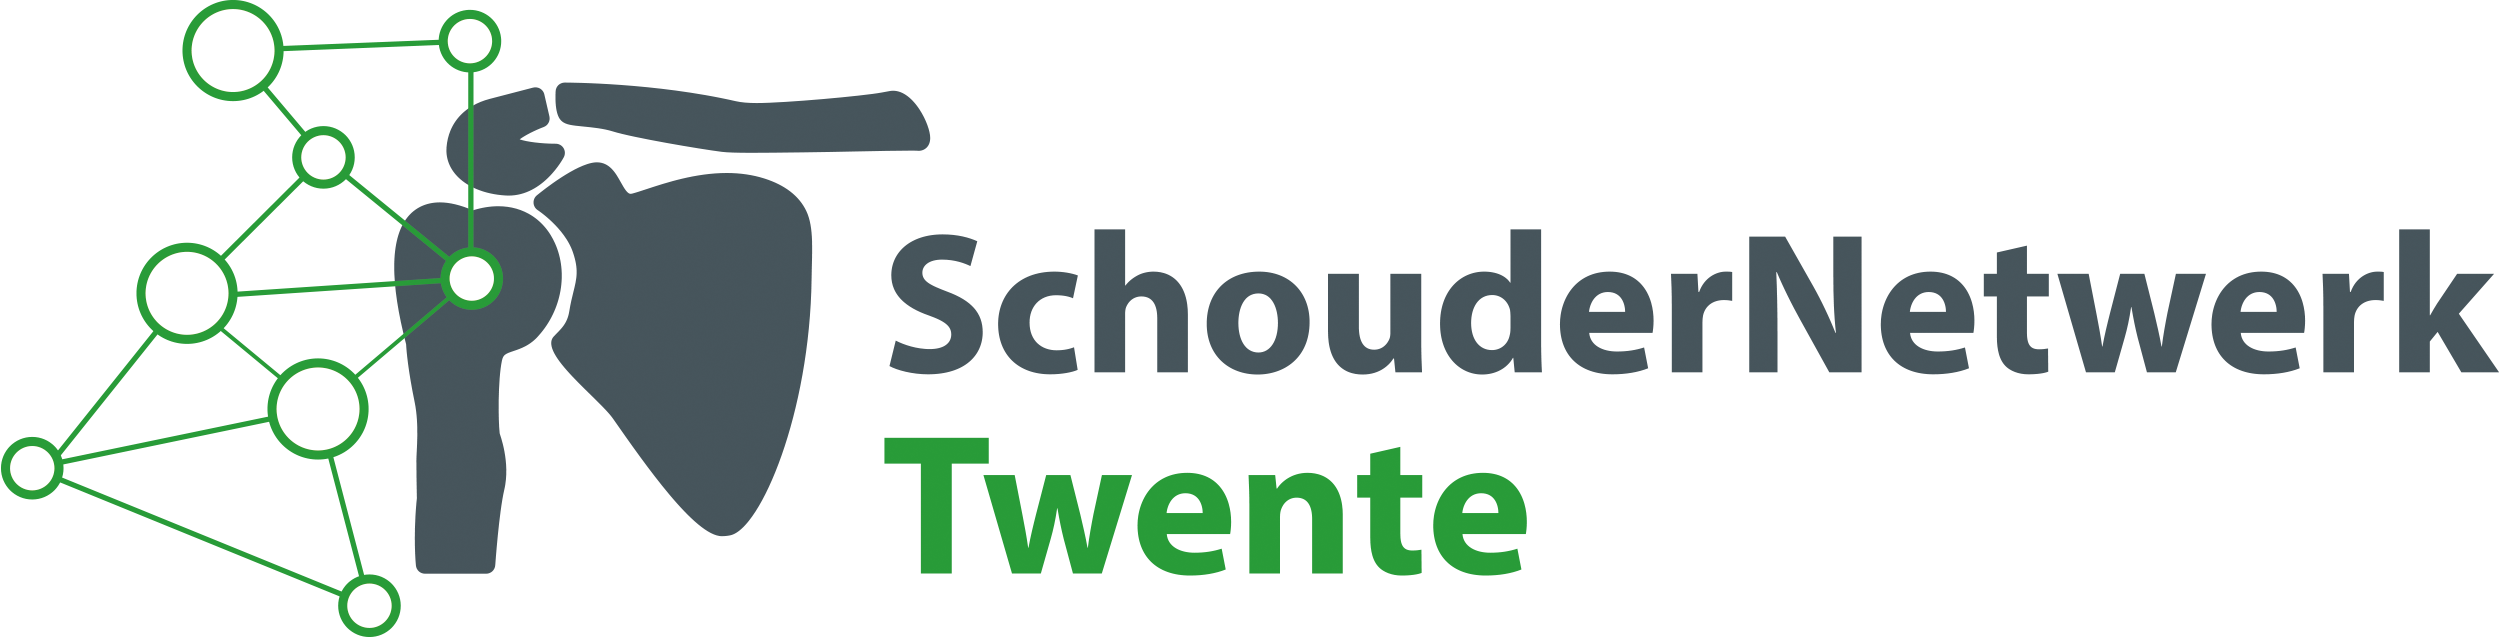 Schoudernetwerk Twente